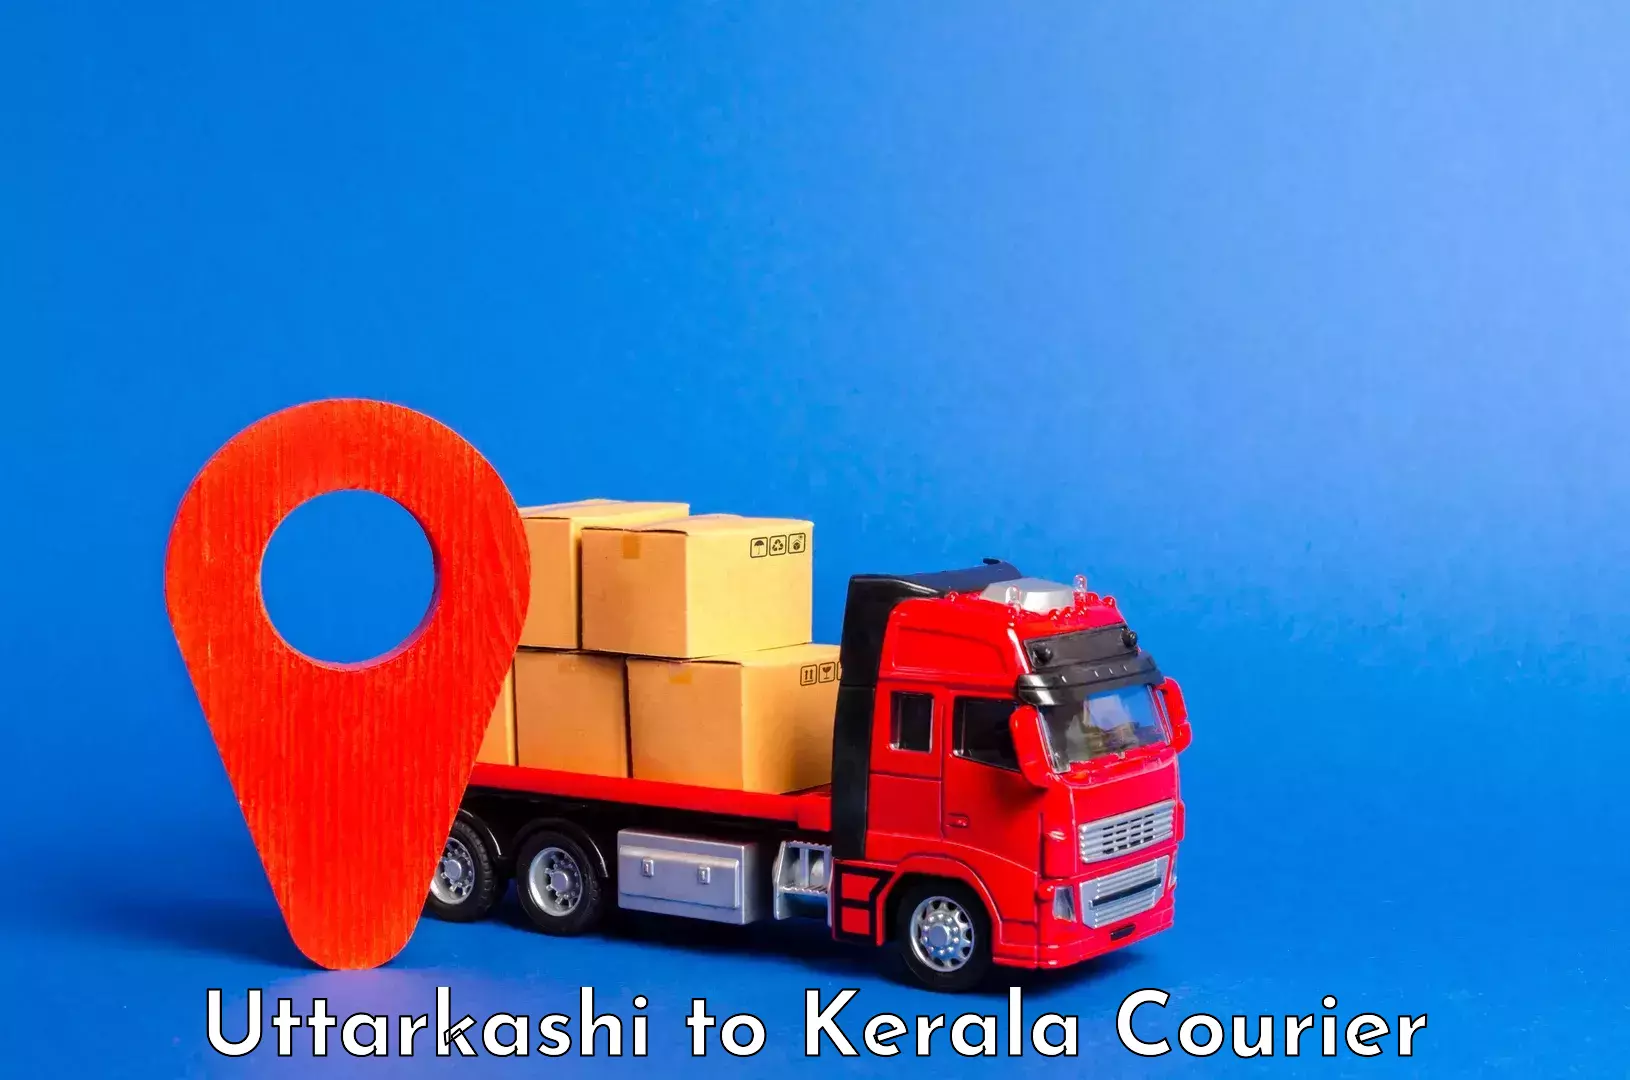 Luggage transport deals Uttarkashi to Palai